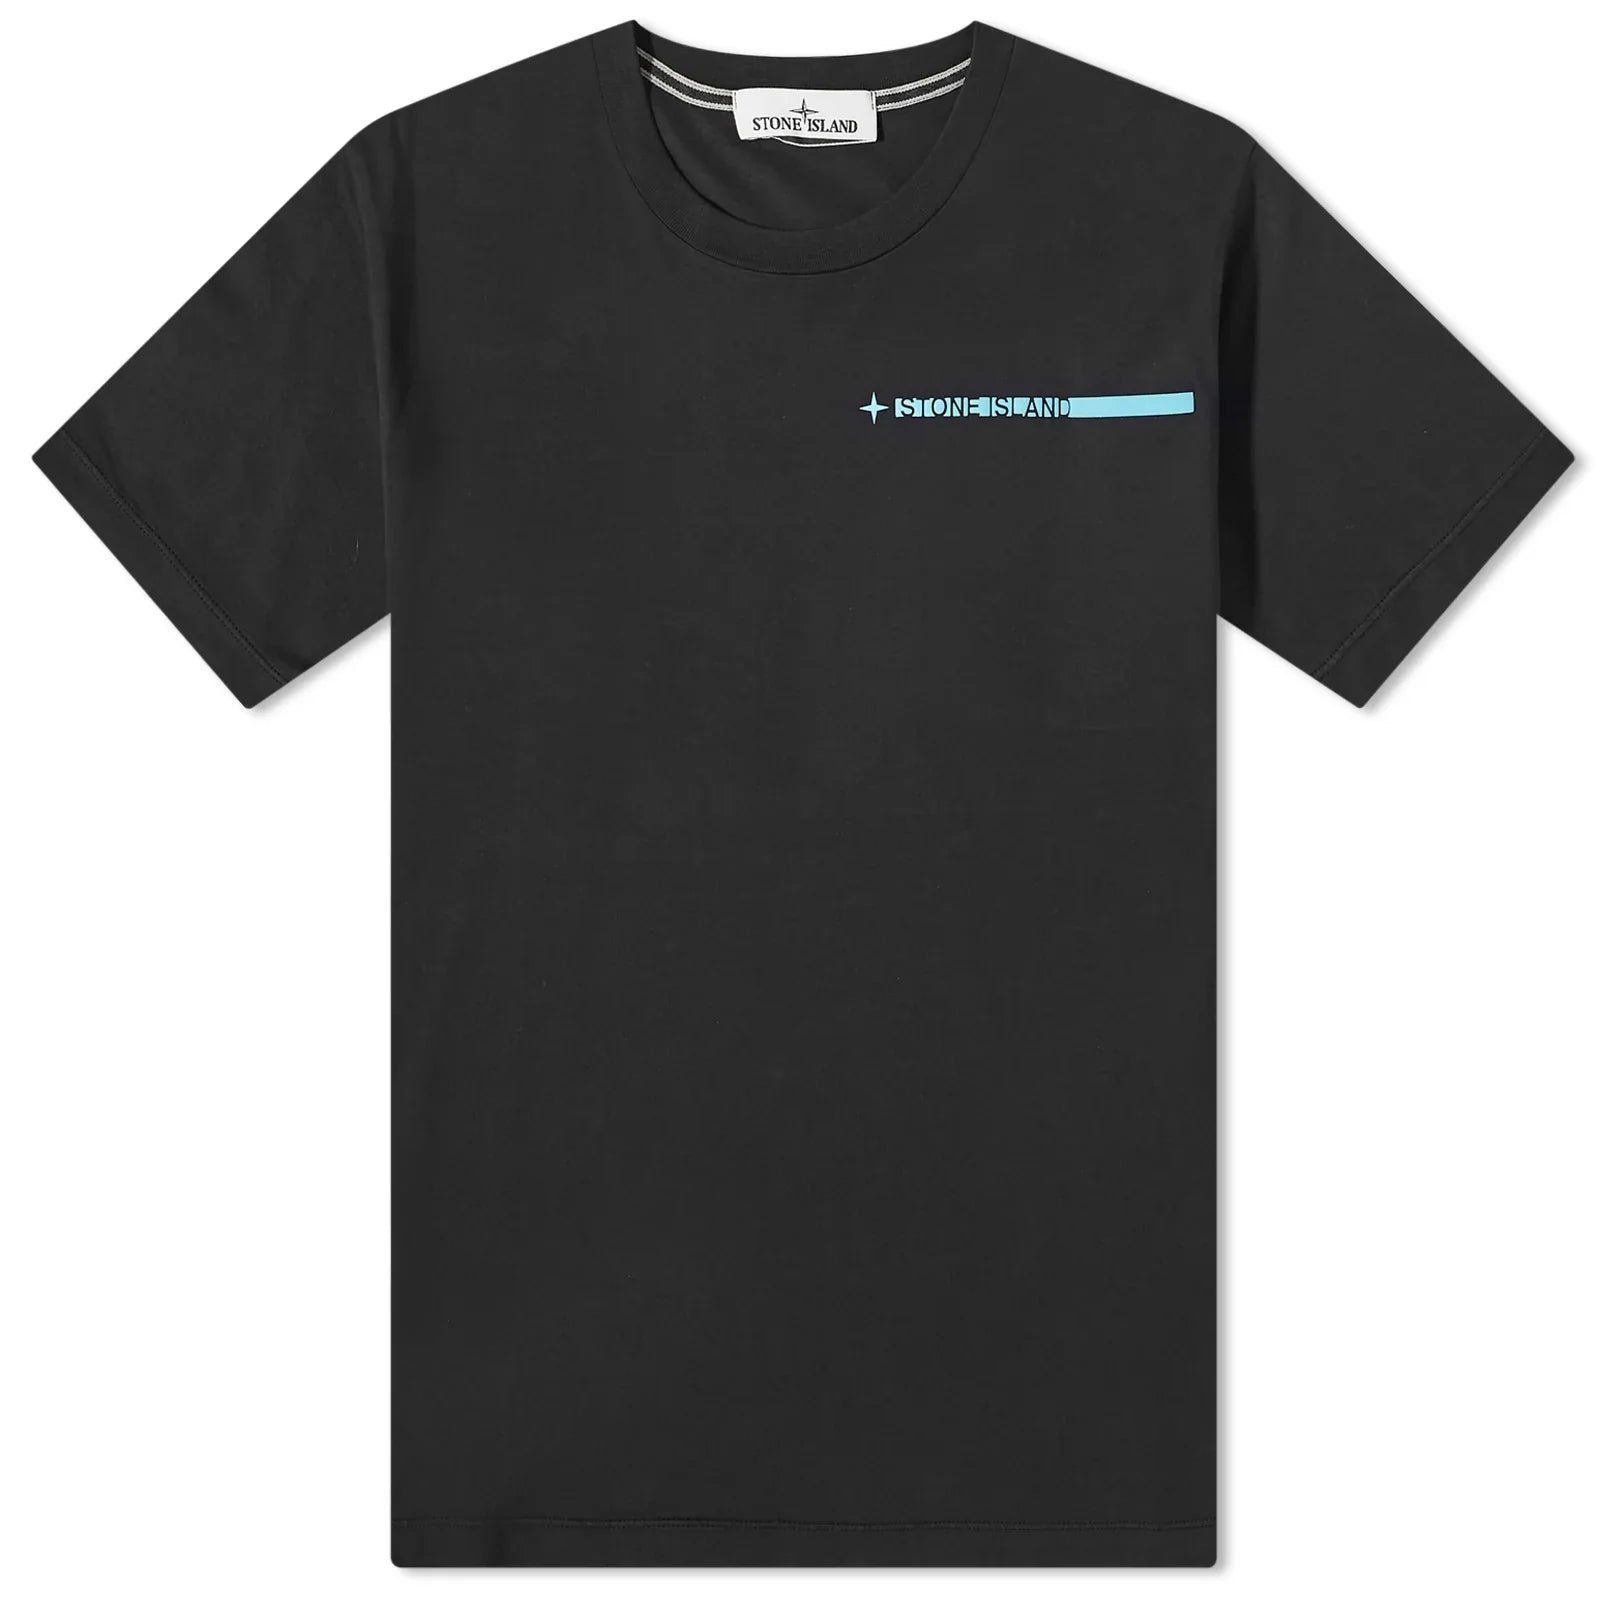 Stone Island Black Logo T-Shirt - DANYOUNGUK